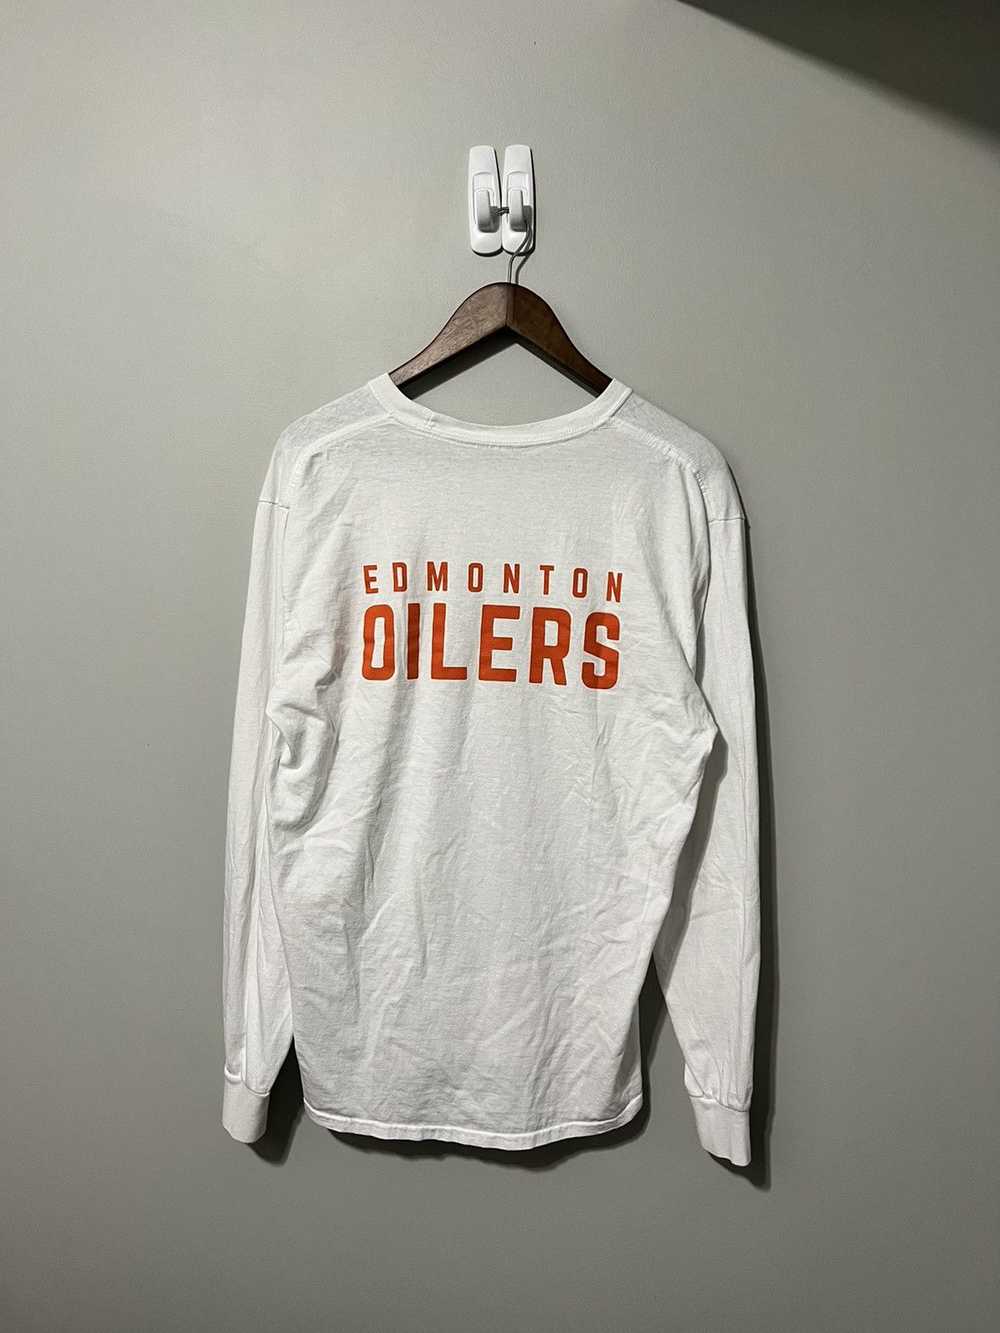 NHL Edmonton Oilers Sweatshirt - image 2